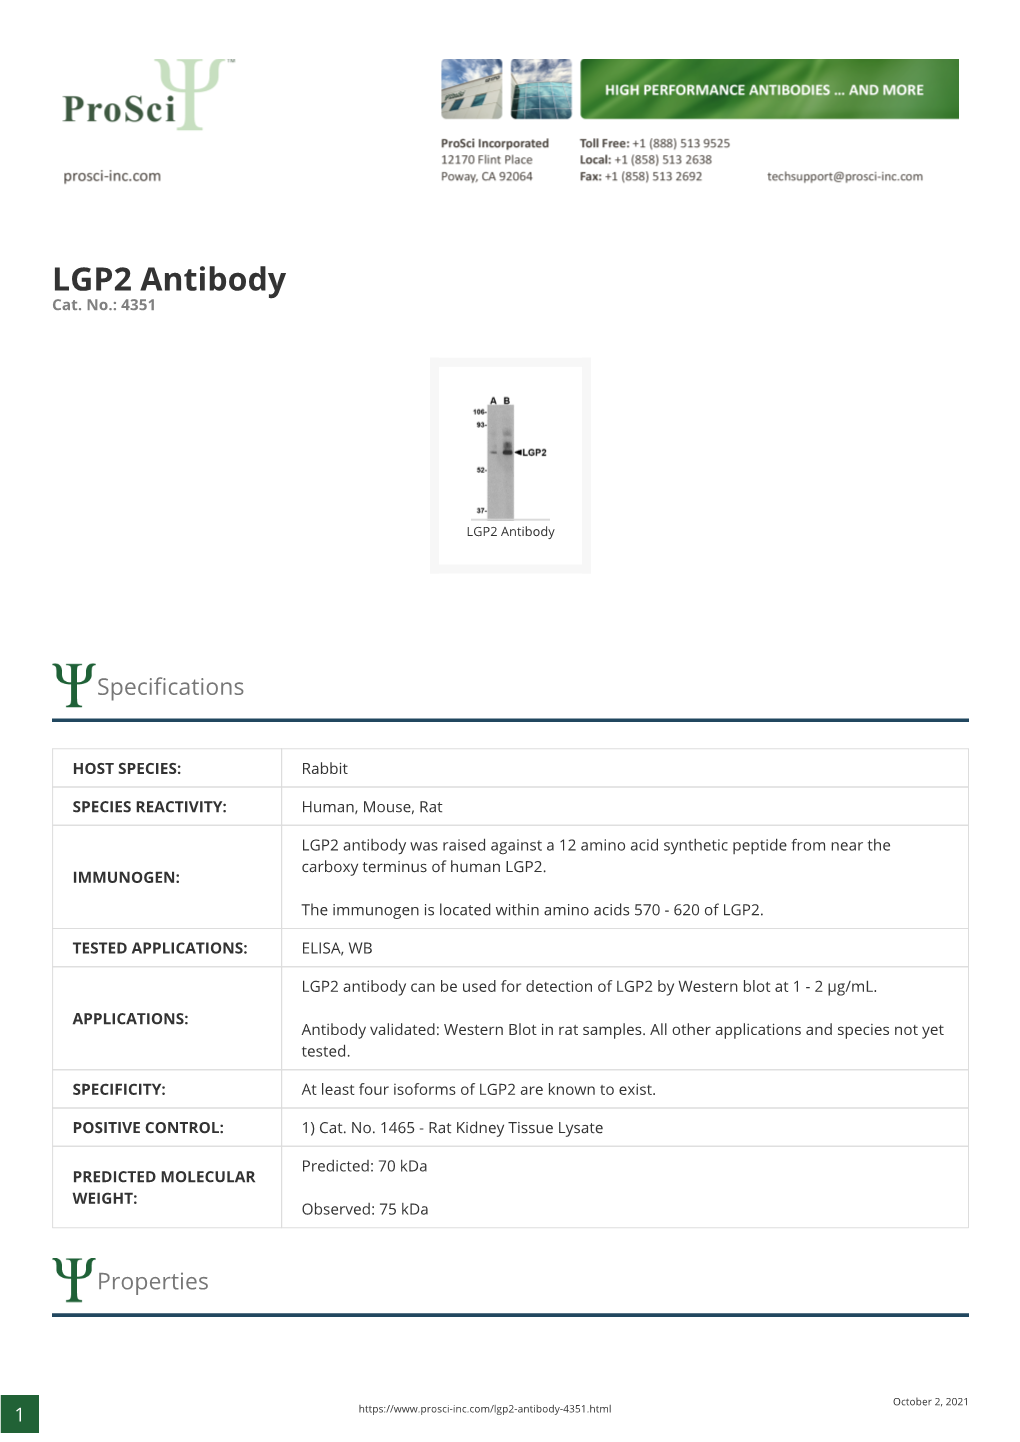 LGP2 Antibody Cat